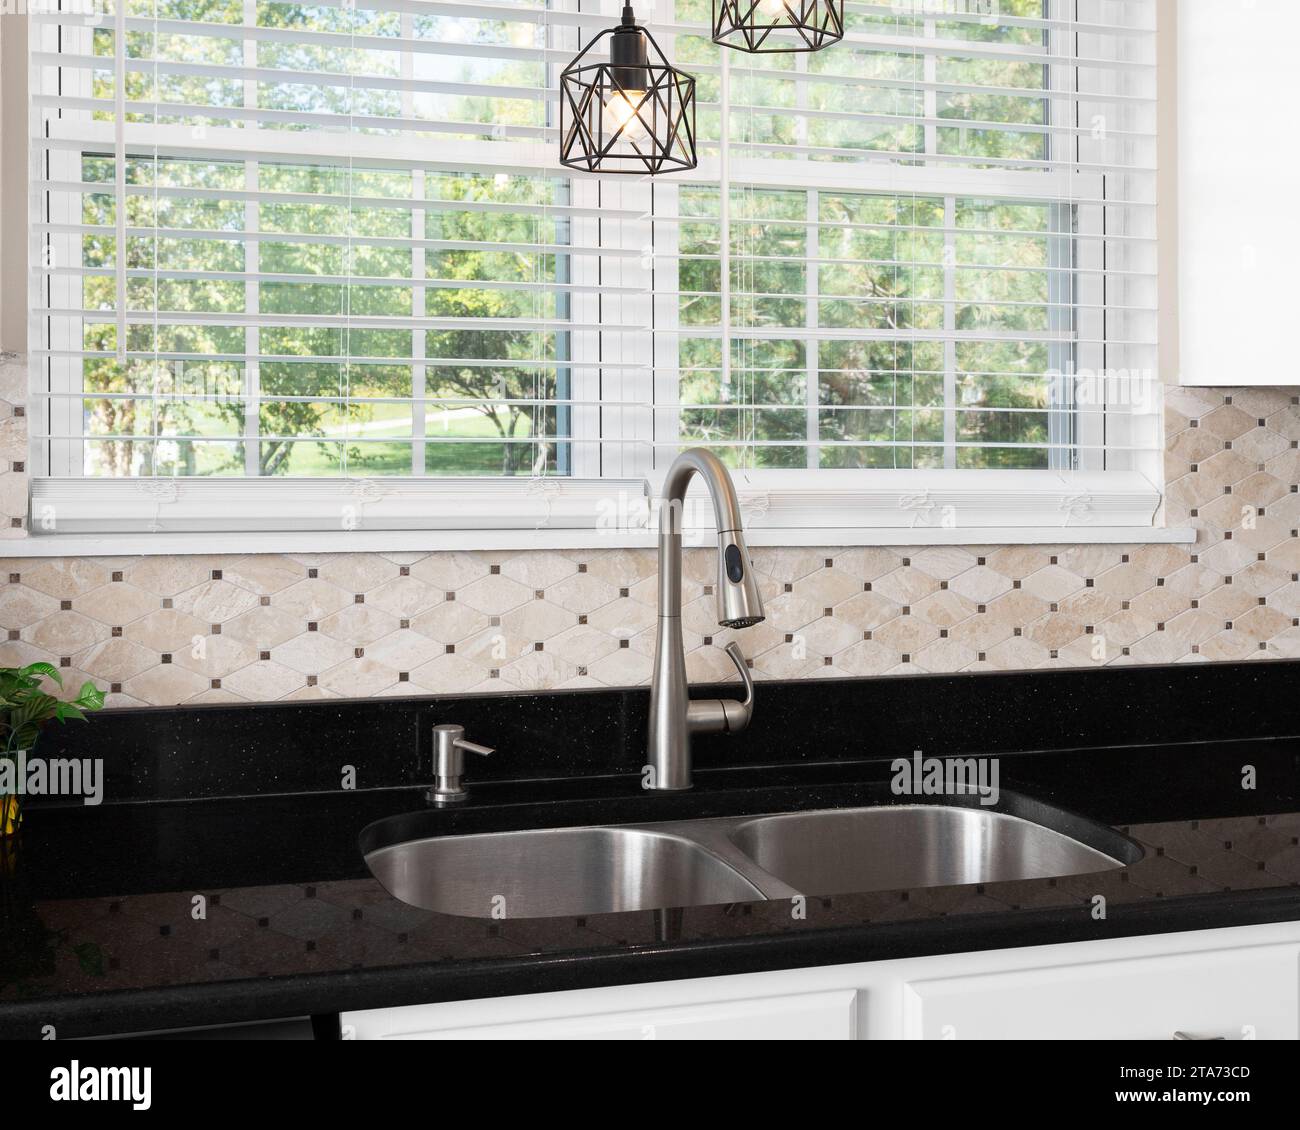 Un détail d'évier de cuisine avec un comptoir de quartz noir, un dosseret carrelé en pierre brune et des lumières suspendues au-dessus d'un robinet en acier inoxydable poli. Banque D'Images